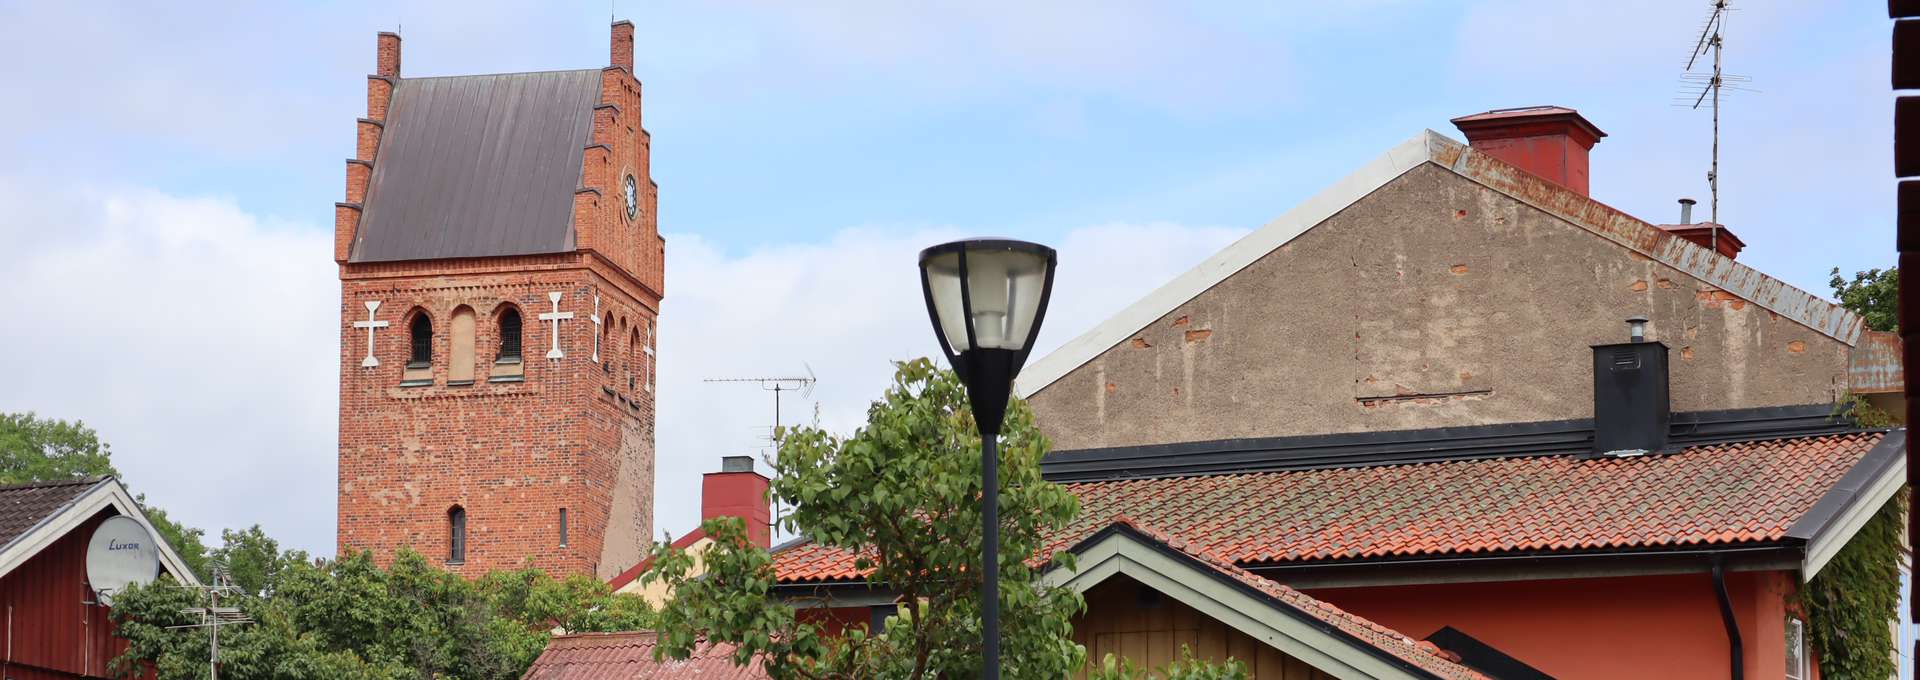 Den gamla medelstidsstaden Torshälla med kyrkan.